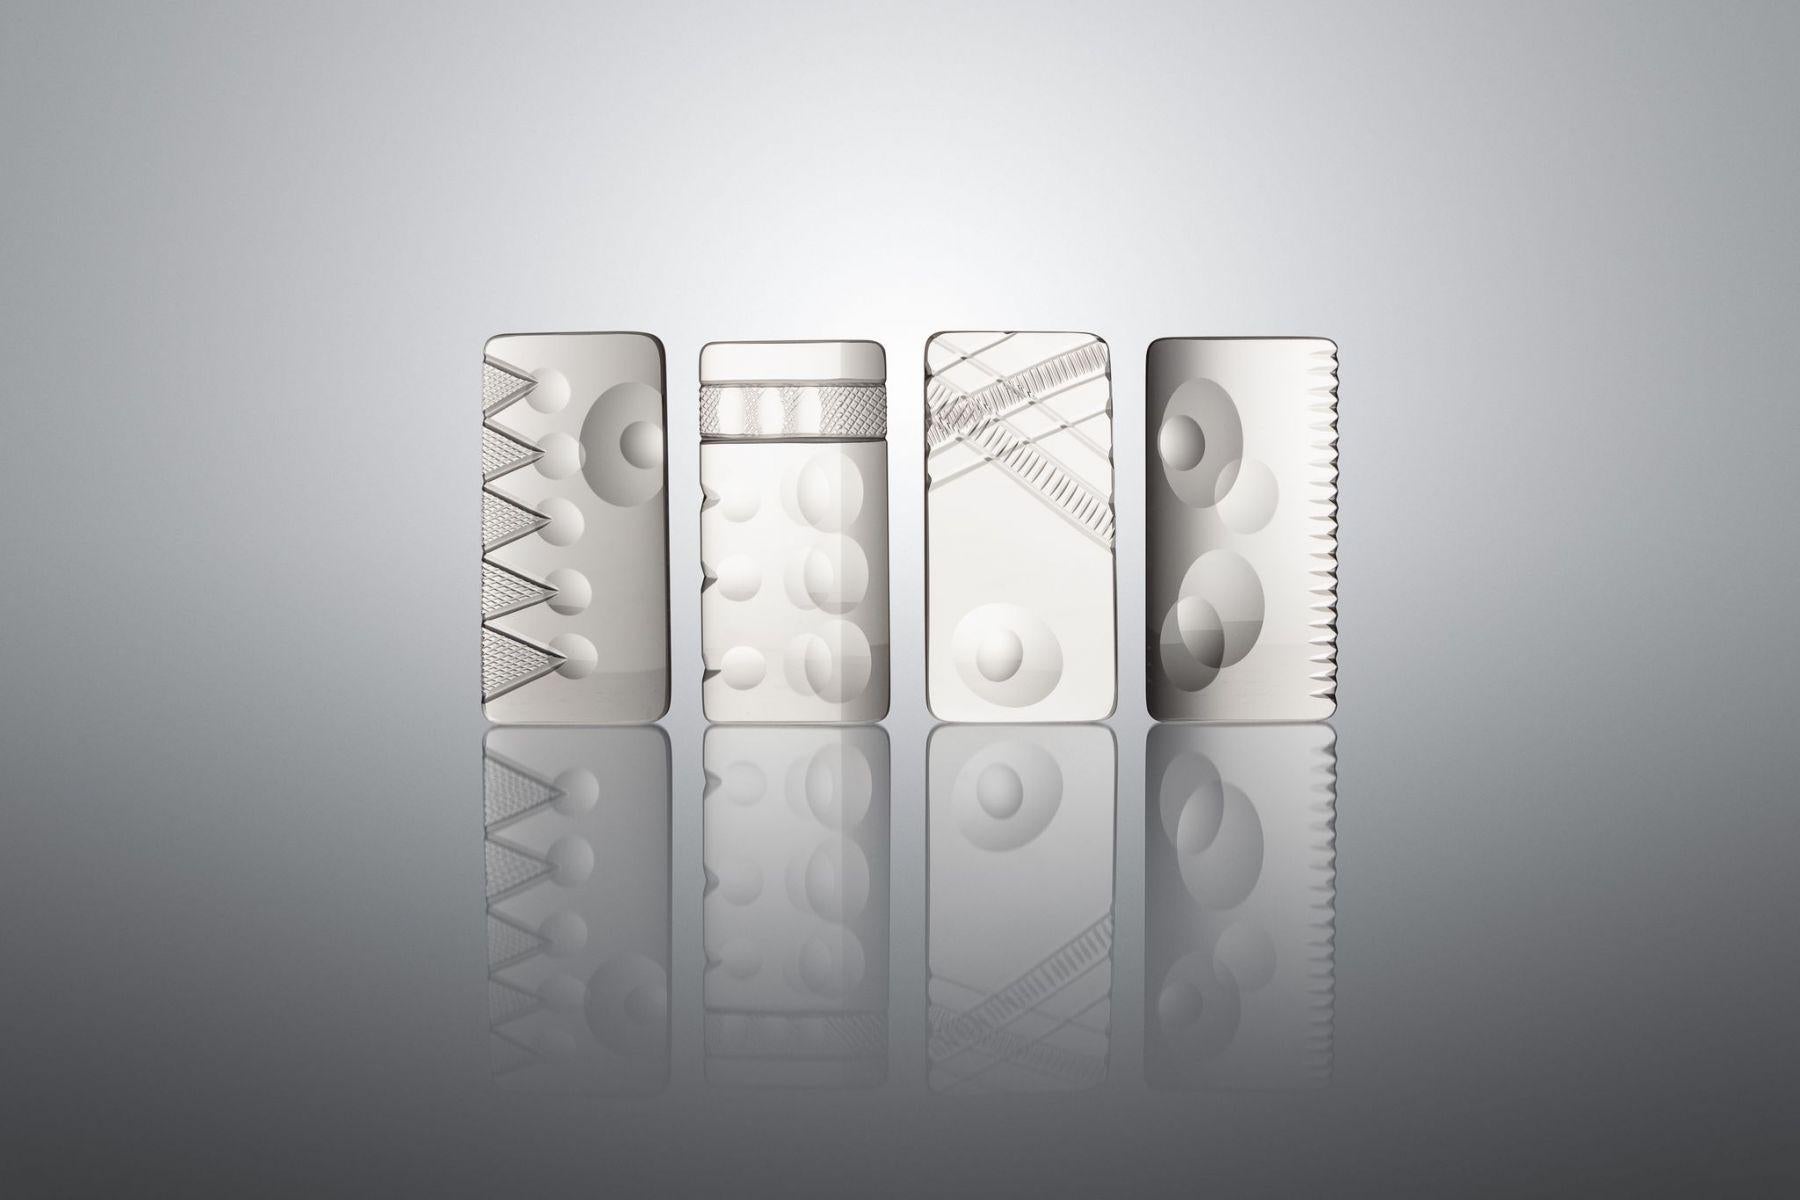 Pocket Lens Composition - Sculpture by Lothar Böttcher